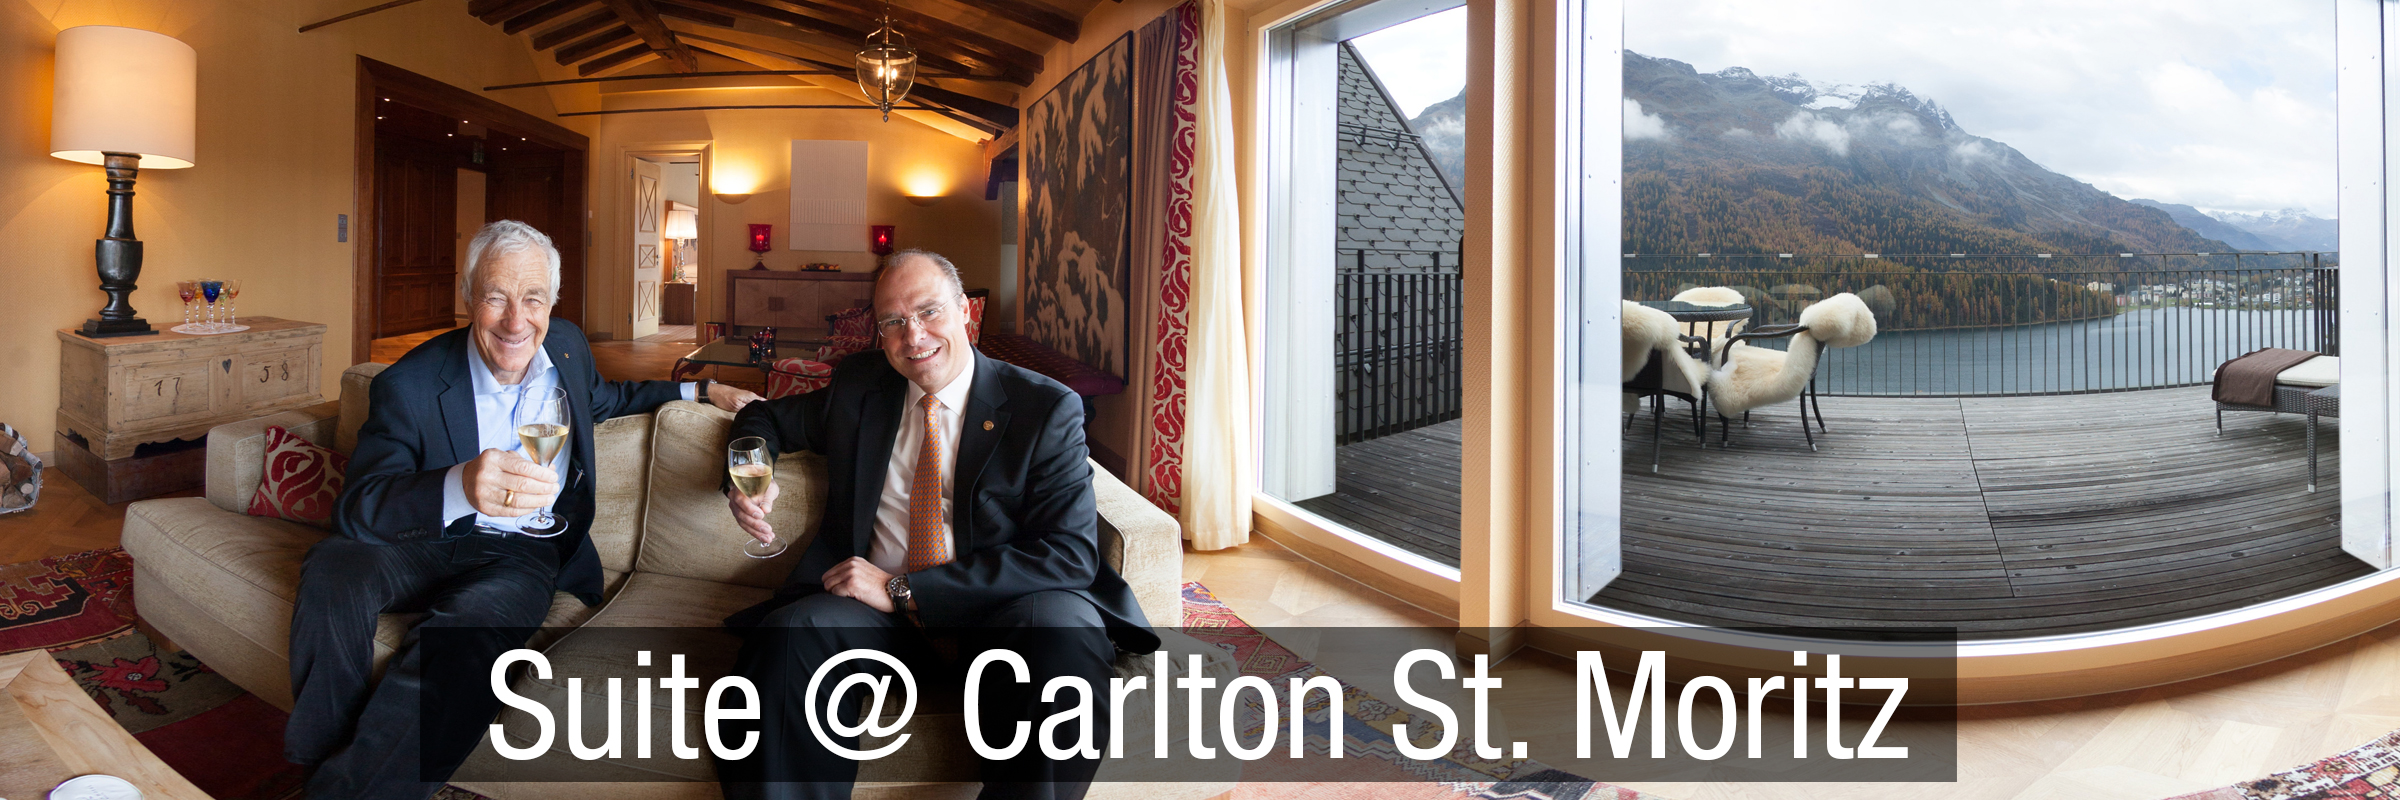 St. Moritz Carlton Suite